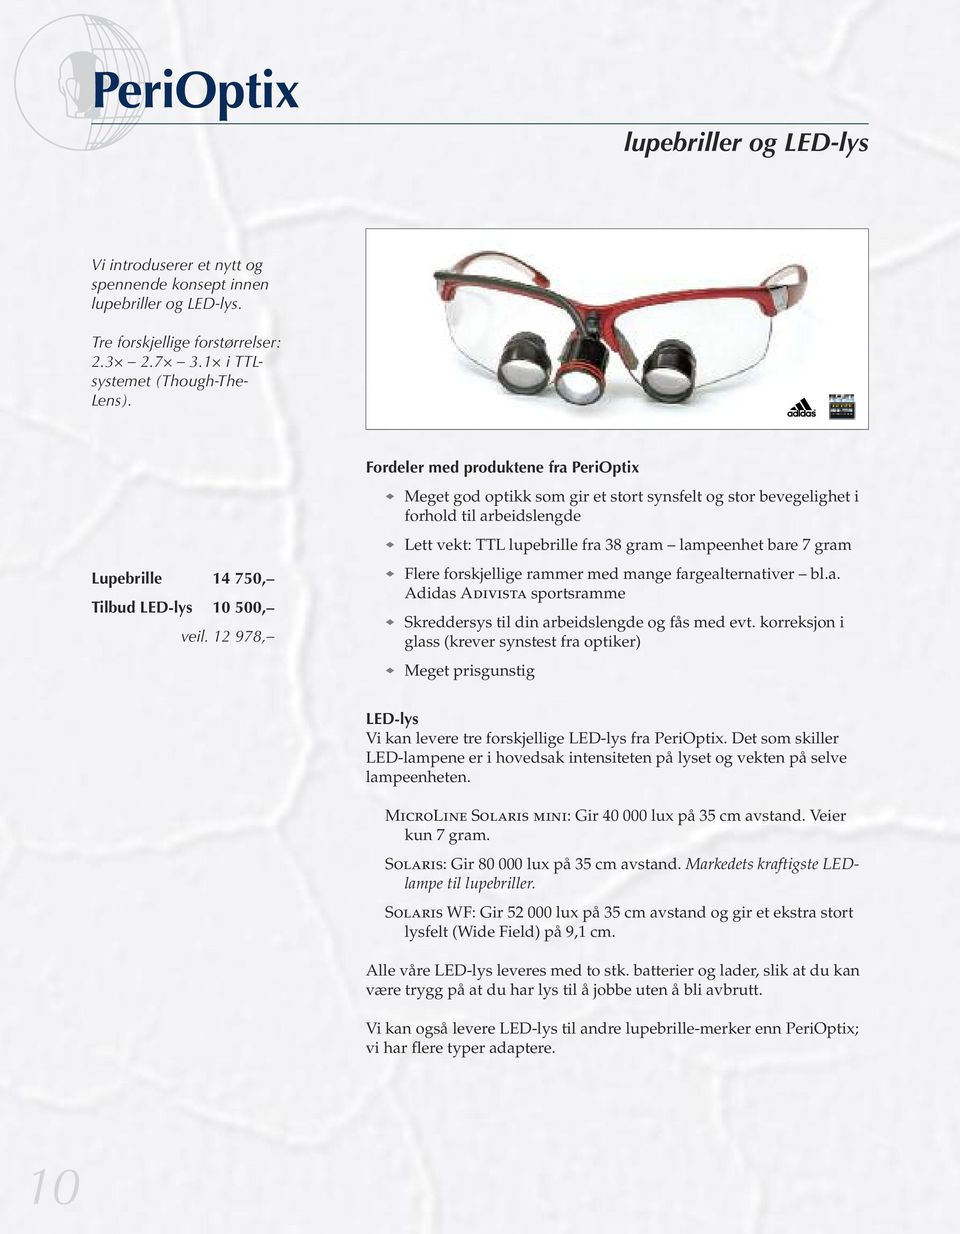 Lupebrille 14 750, Tilbud LED-lys 10 500, veil. 12 978, Flere forskjellige rammer med mange fargealternativer bl.a. Adidas Adivista sportsramme Skreddersys til din arbeidslengde og fås med evt.